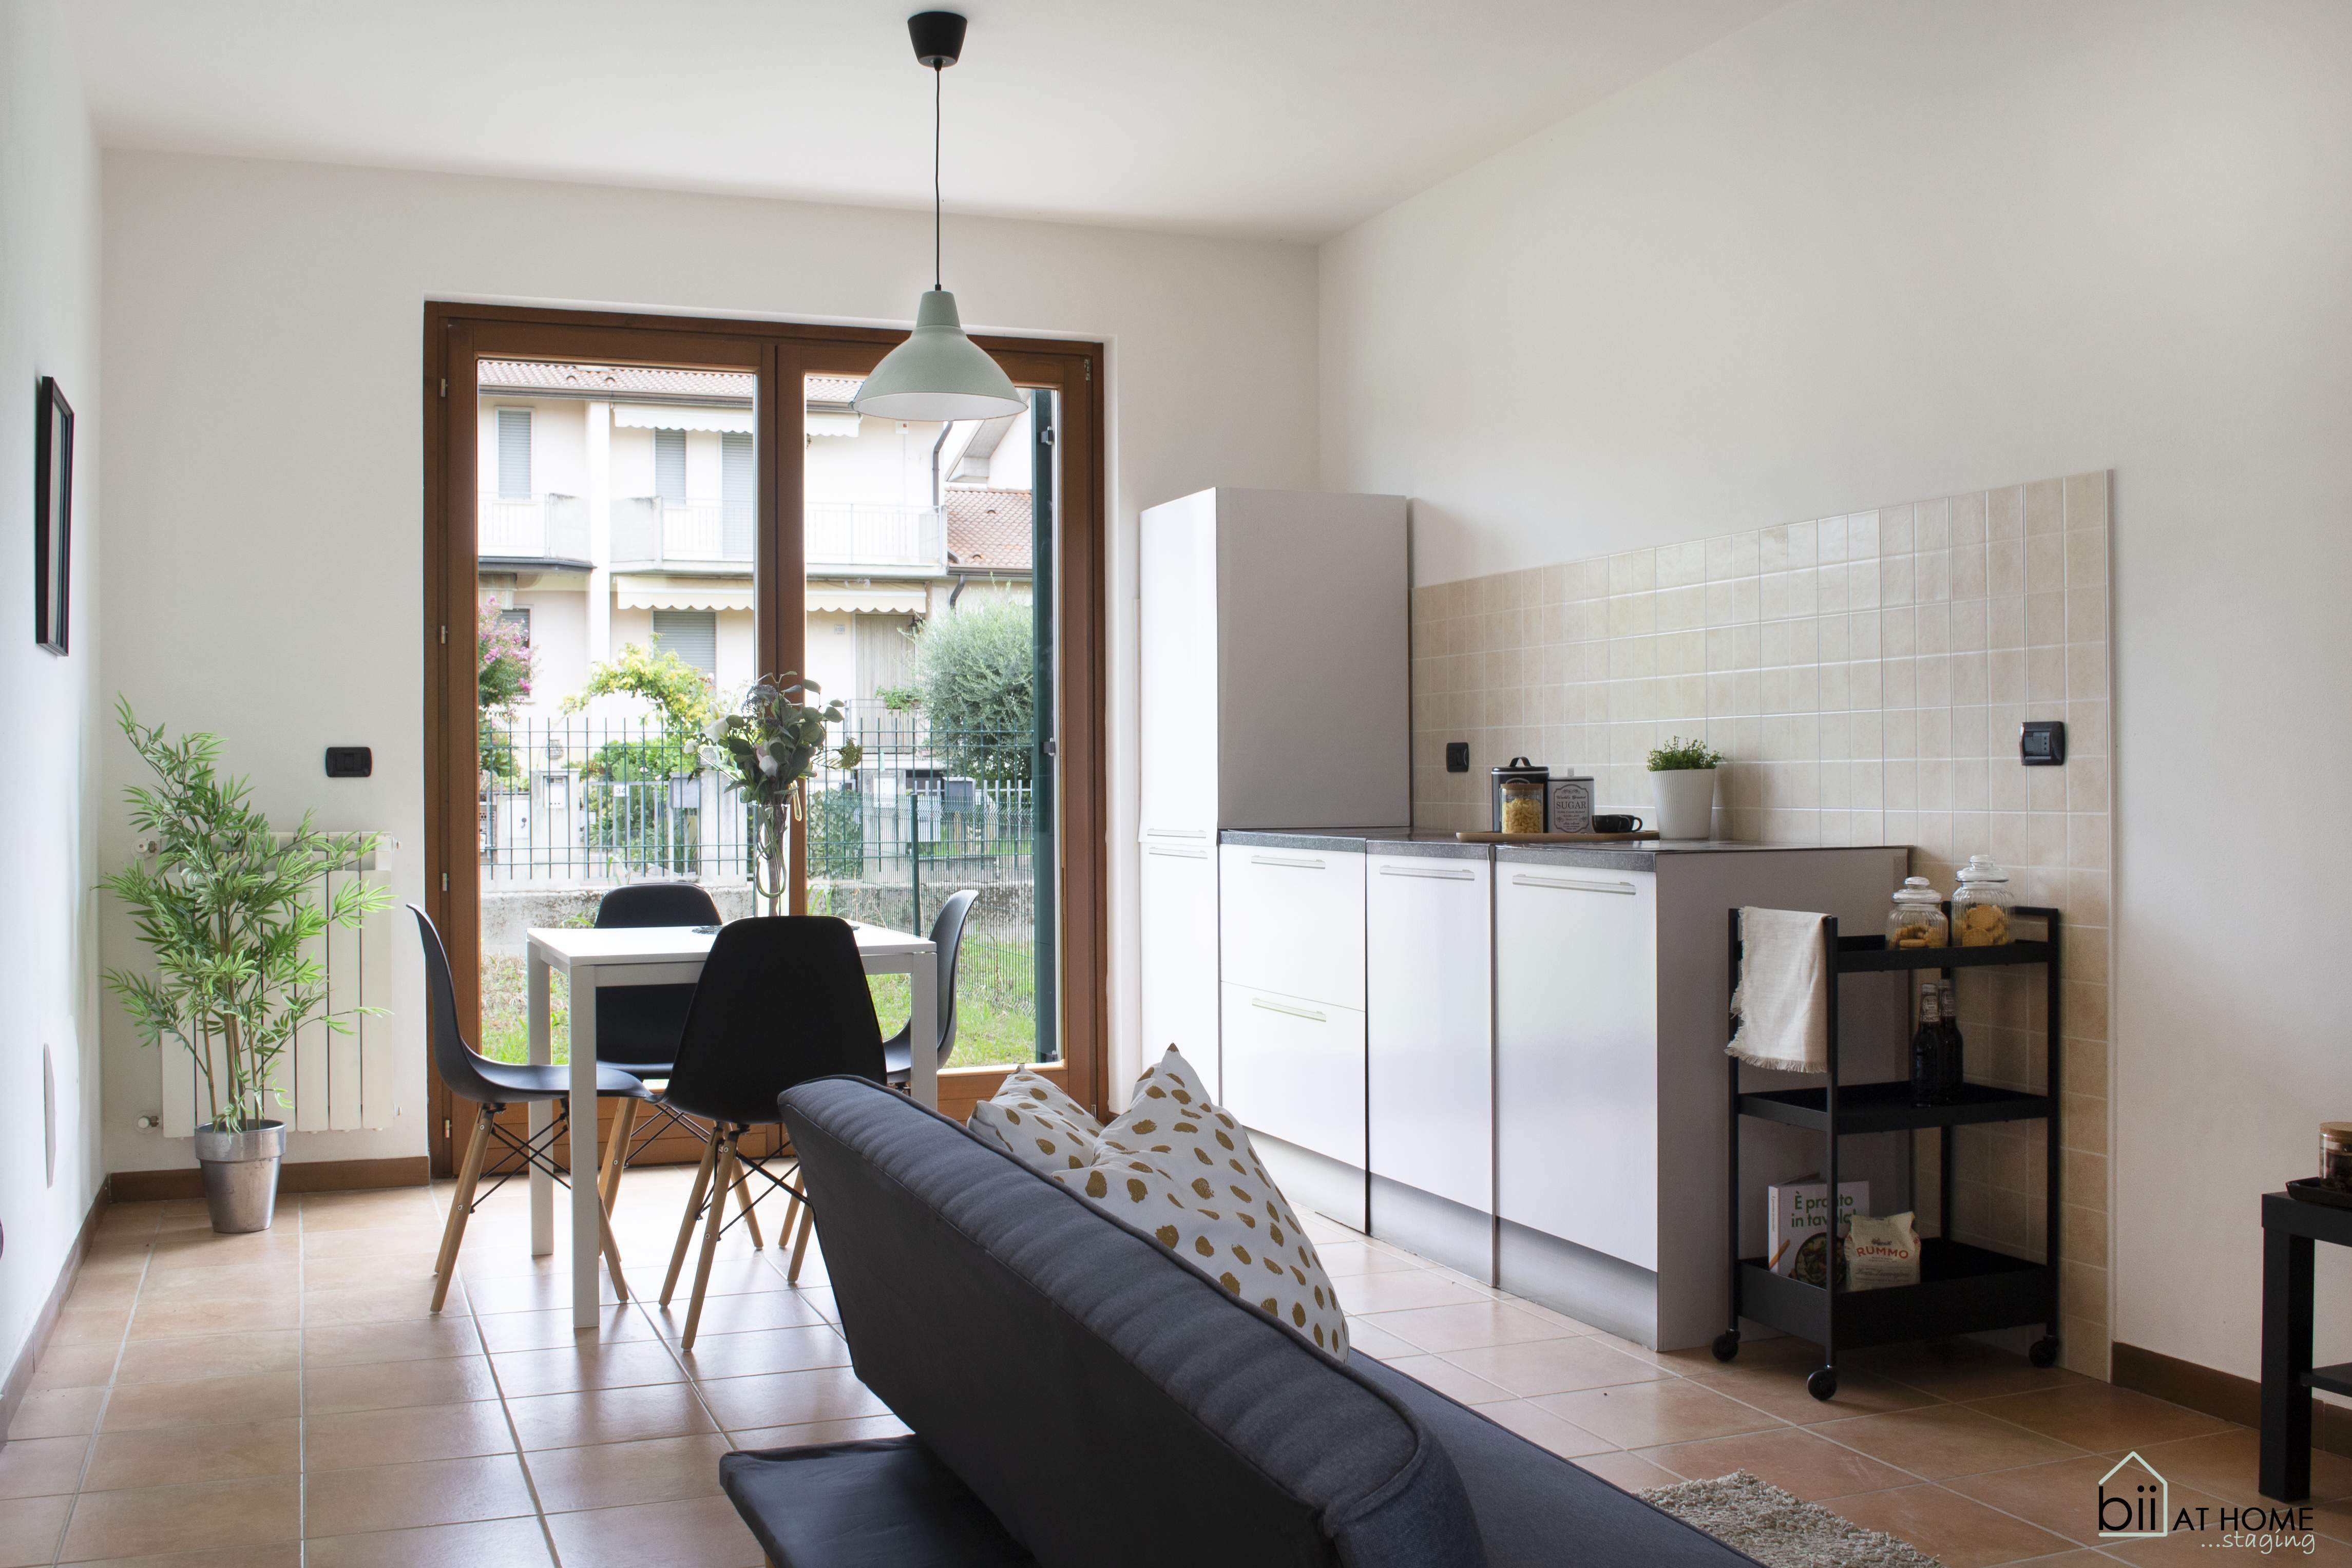 Progetto di home staging in collaborazione con Alessia di Home Staging Verona